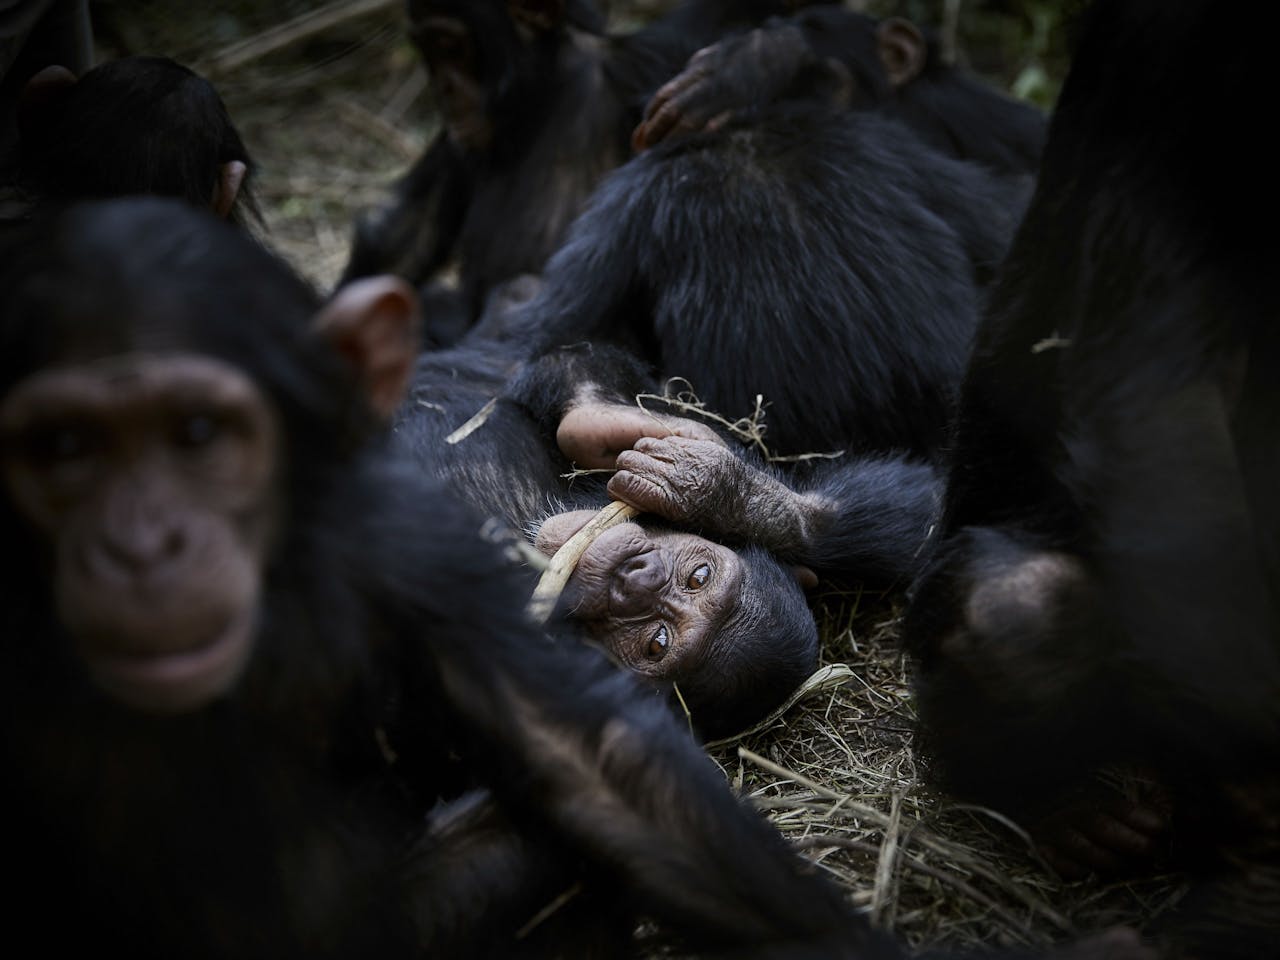 Een groep verweesde chimpansees, prooi gevallen aan stroperij in de Democratische Republiek Congo. Tijdens de coronacrisis lijkt stroperij in ieder geval in Afrika aan te trekken.